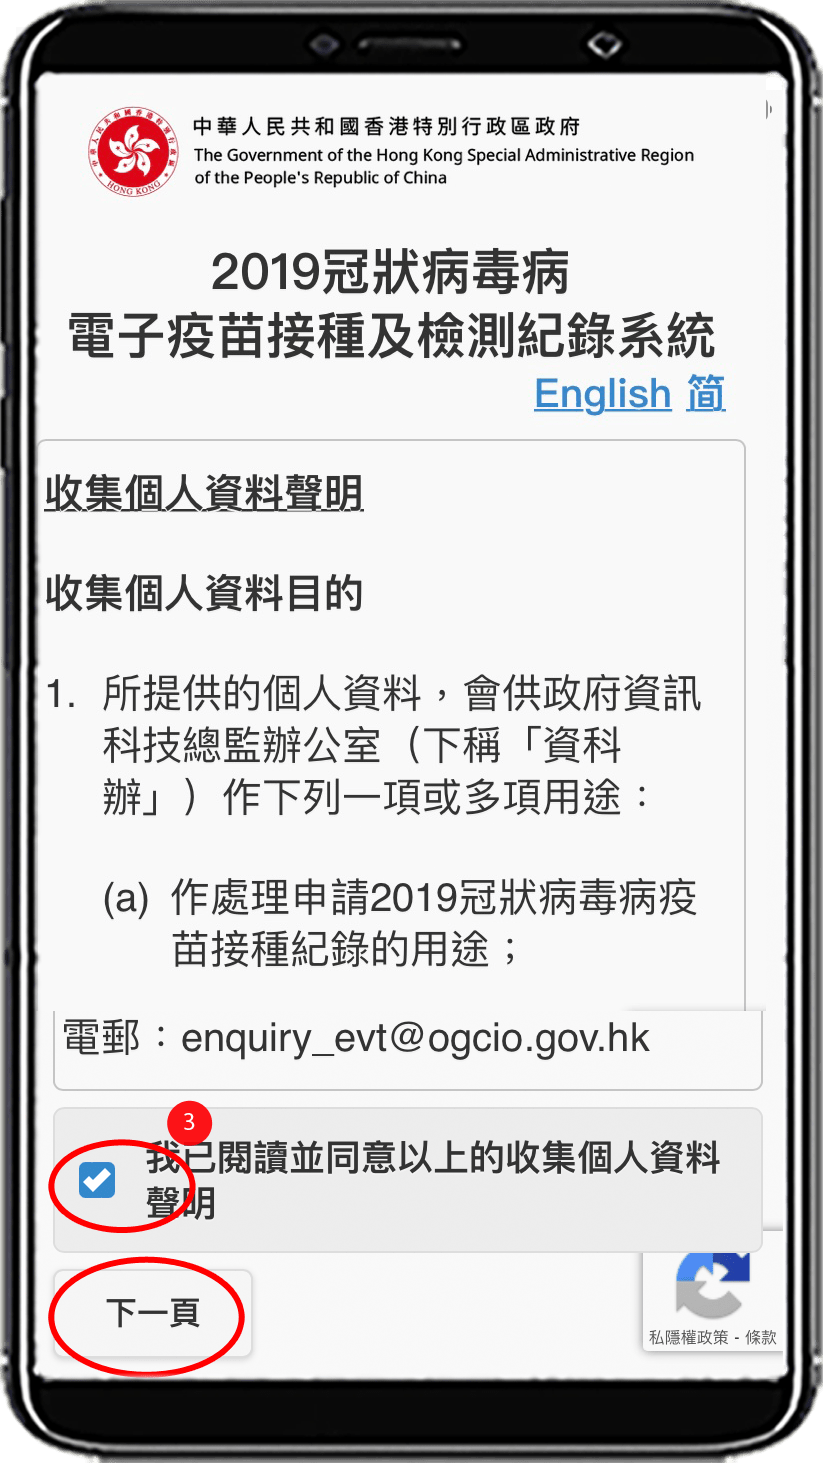 申请人须阅读并同意收集个人资料声明，剔选方格后按[下一页]按钮。  	  4. 选择「身份证明文件类型」(例如「香港身份证」，「香港出生证明书」或「其他护照或旅游证件」)。  5. 输入「身份证明文件号码」，包括括号内所有的英文字母和数字，无须输入括号。  6a. 若选择 「香港身份证」， 输入香港身份证签发日期。  6b. 若选择 「香港出生证明书」 或 「其他护照或旅游证件」，输入出生日期 (详情参考下图)。  7. 按[提交]按钮.    图6b ，当选择「香港出生证明书」或「其他护照或旅游证件」，需要输入出生日期。  	  8. 若有相关纪录，页面会显示你的 2019冠状病毒病「电子针卡」。  9. 按右下角的按钮「储存记录」，将「电子针卡」下载到你的桌面或移动设备中。政府网页图片